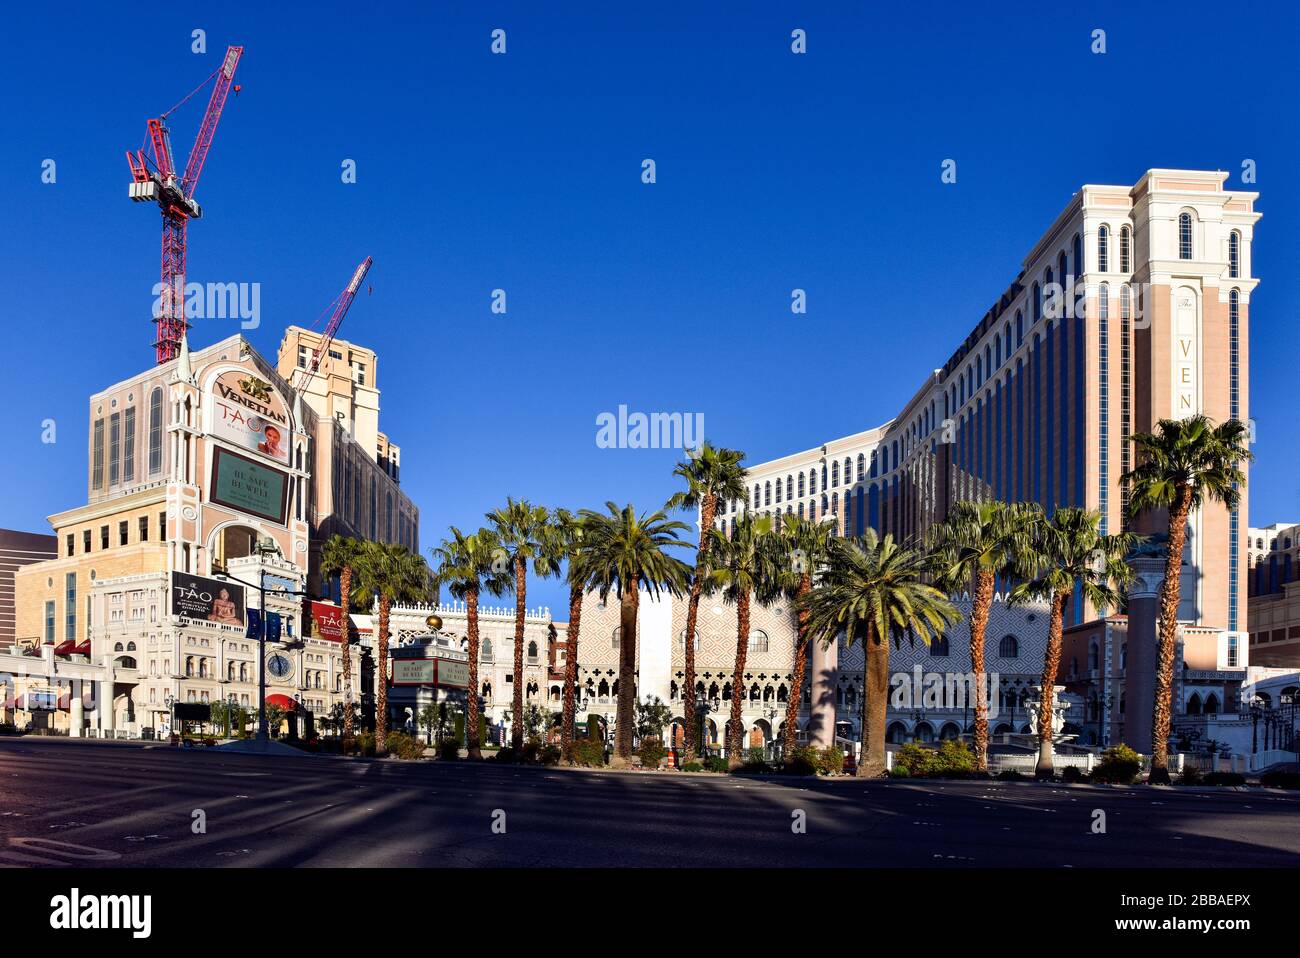 Une semaine dans la fermeture de Las Vegas en raison de Coronavirus, le Strip est assez vide. Pas de gens dans la rue et tout est fermé. Banque D'Images